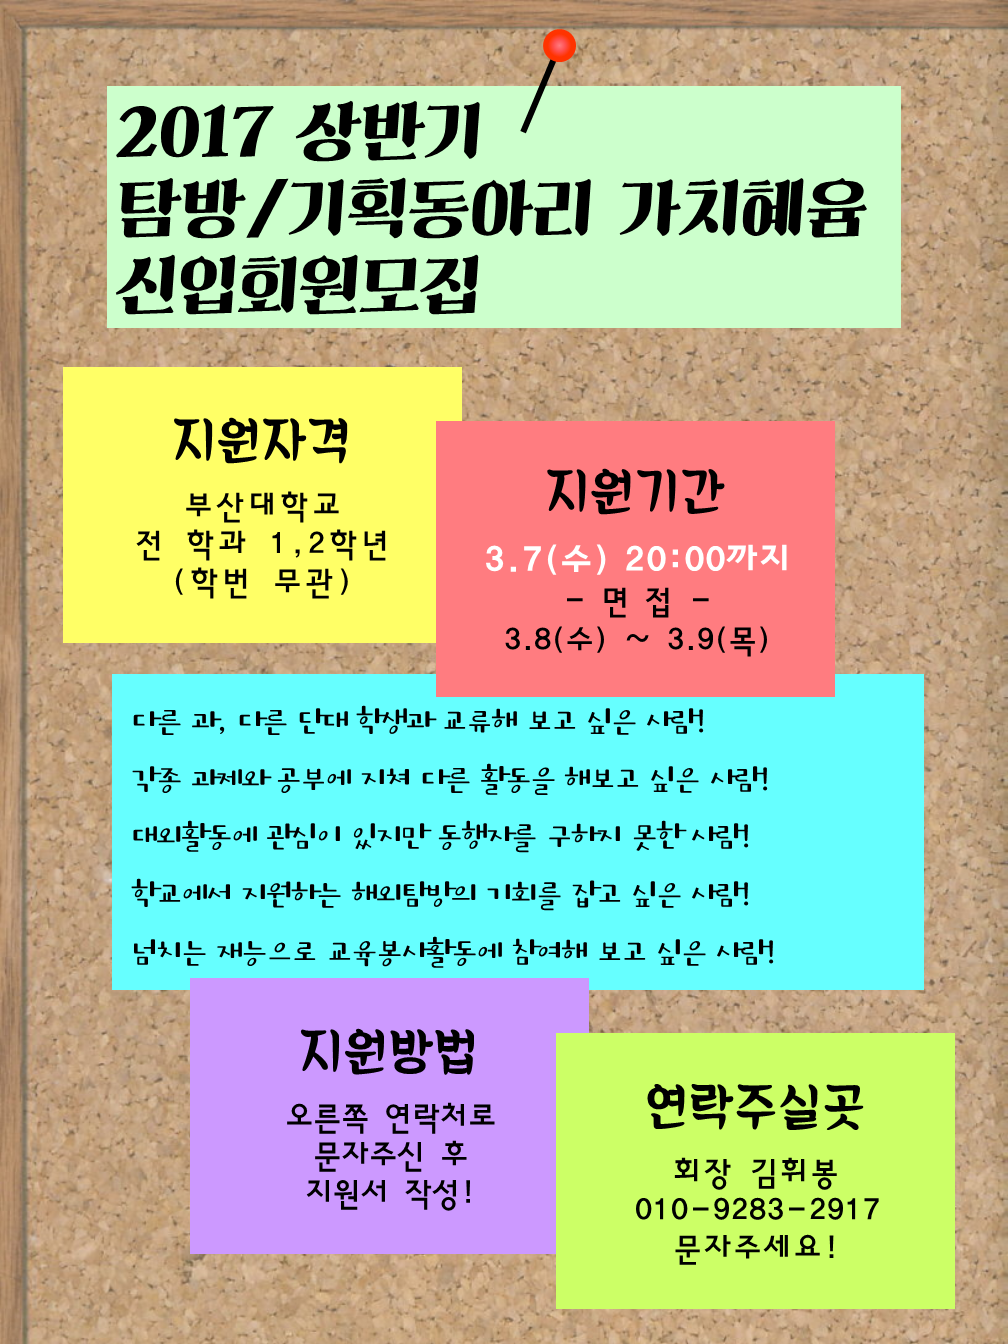 가치혜윰포스터.png : ★★부산대학교 탐방&기획 동아리 가치혜윰에서 신입회원을 모집합니다★★